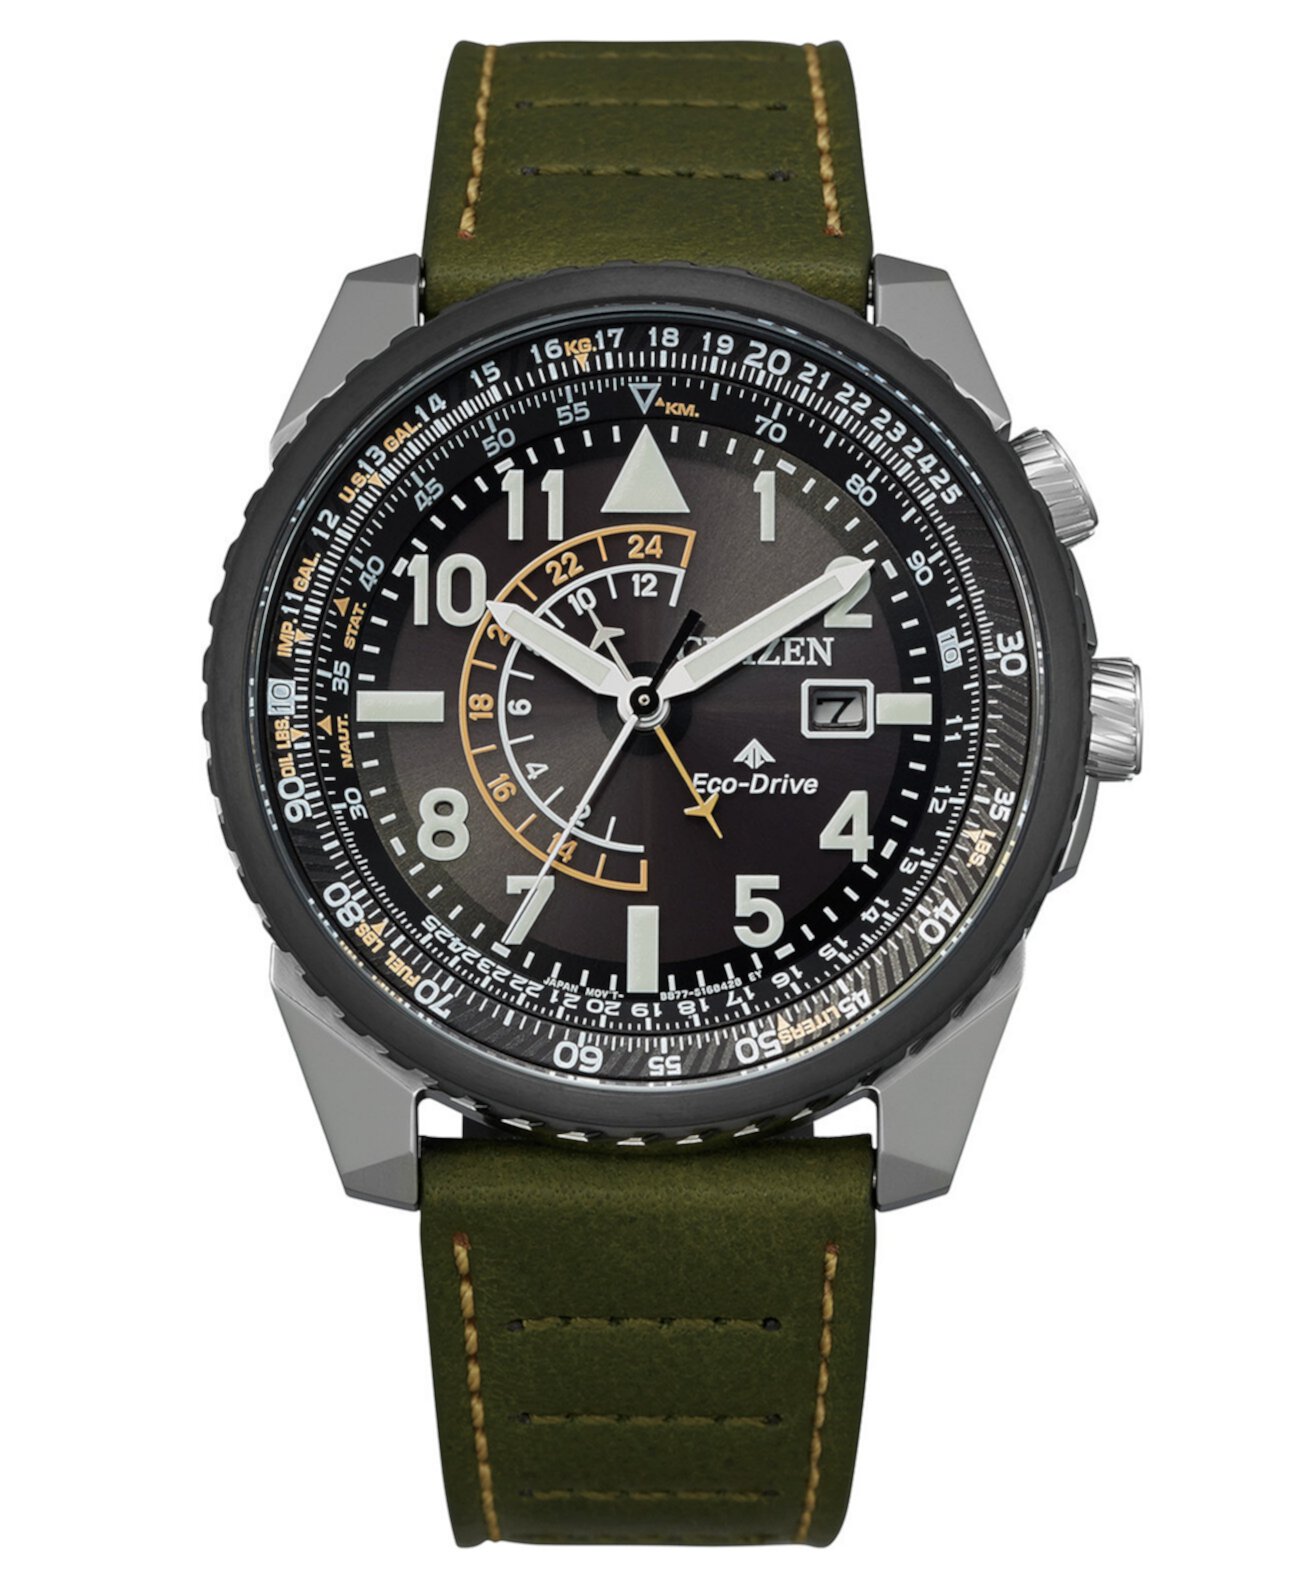 Мужские часы Promaster с зеленым кожаным ремешком Eco-Drive 42 мм Citizen